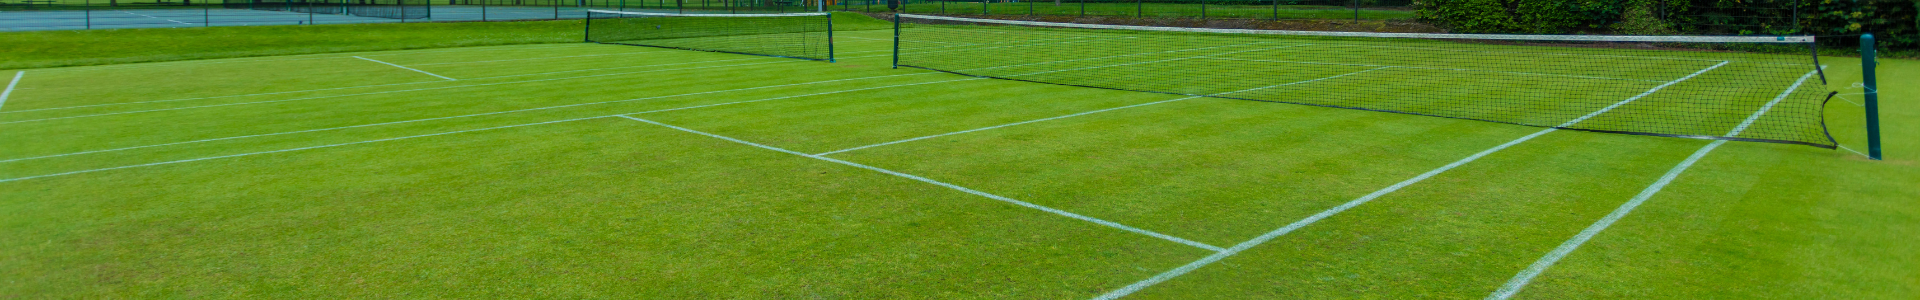 court de tennis gazon synthétique surface